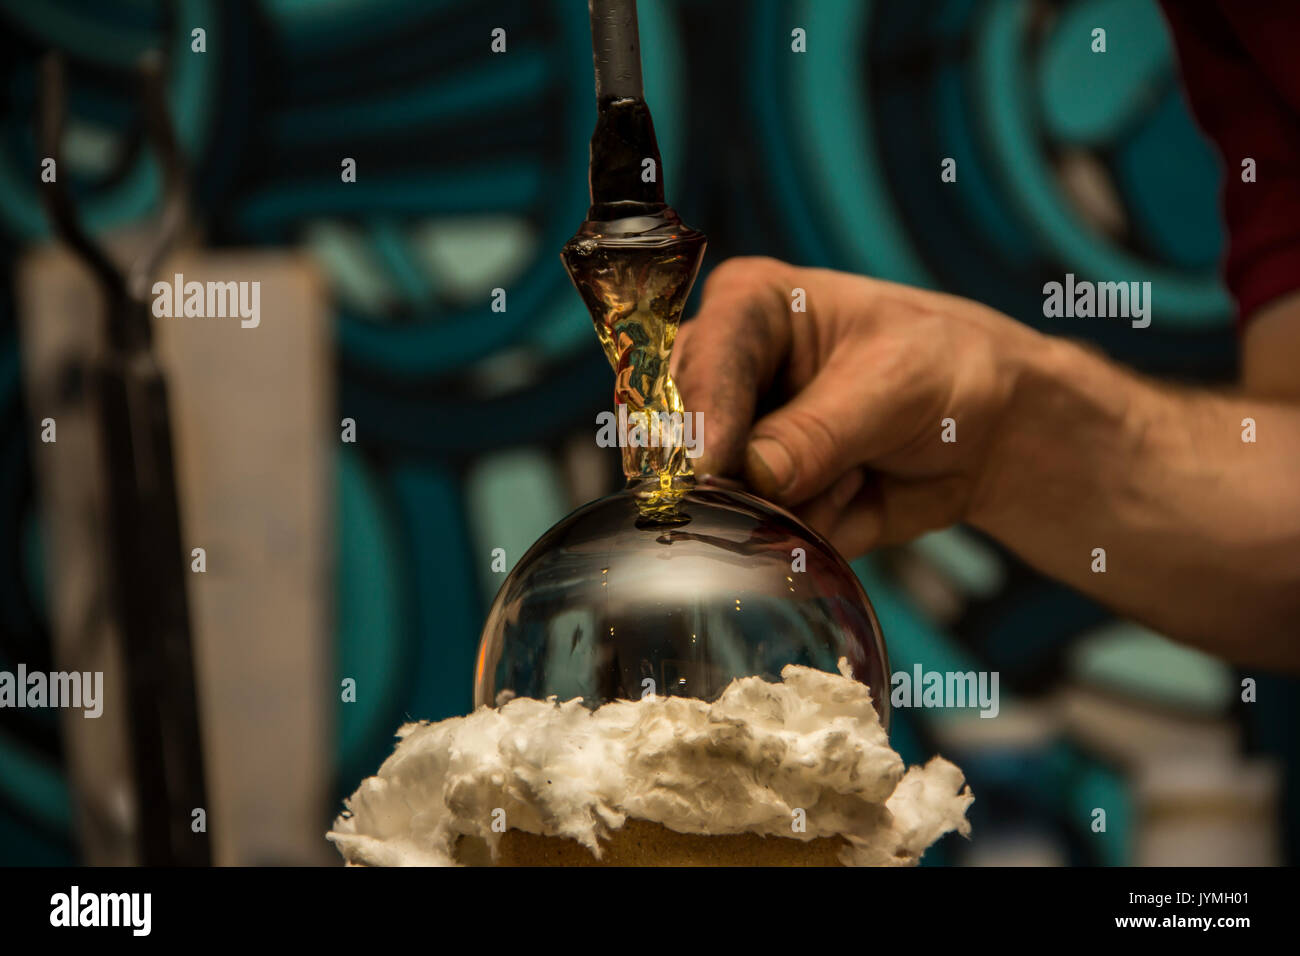 Handgefertigte Abbildung des geschmolzenen Glas, ein Glas Gebläse arbeiten geschmolzenes  Glas auf eine Stange Stockfotografie - Alamy